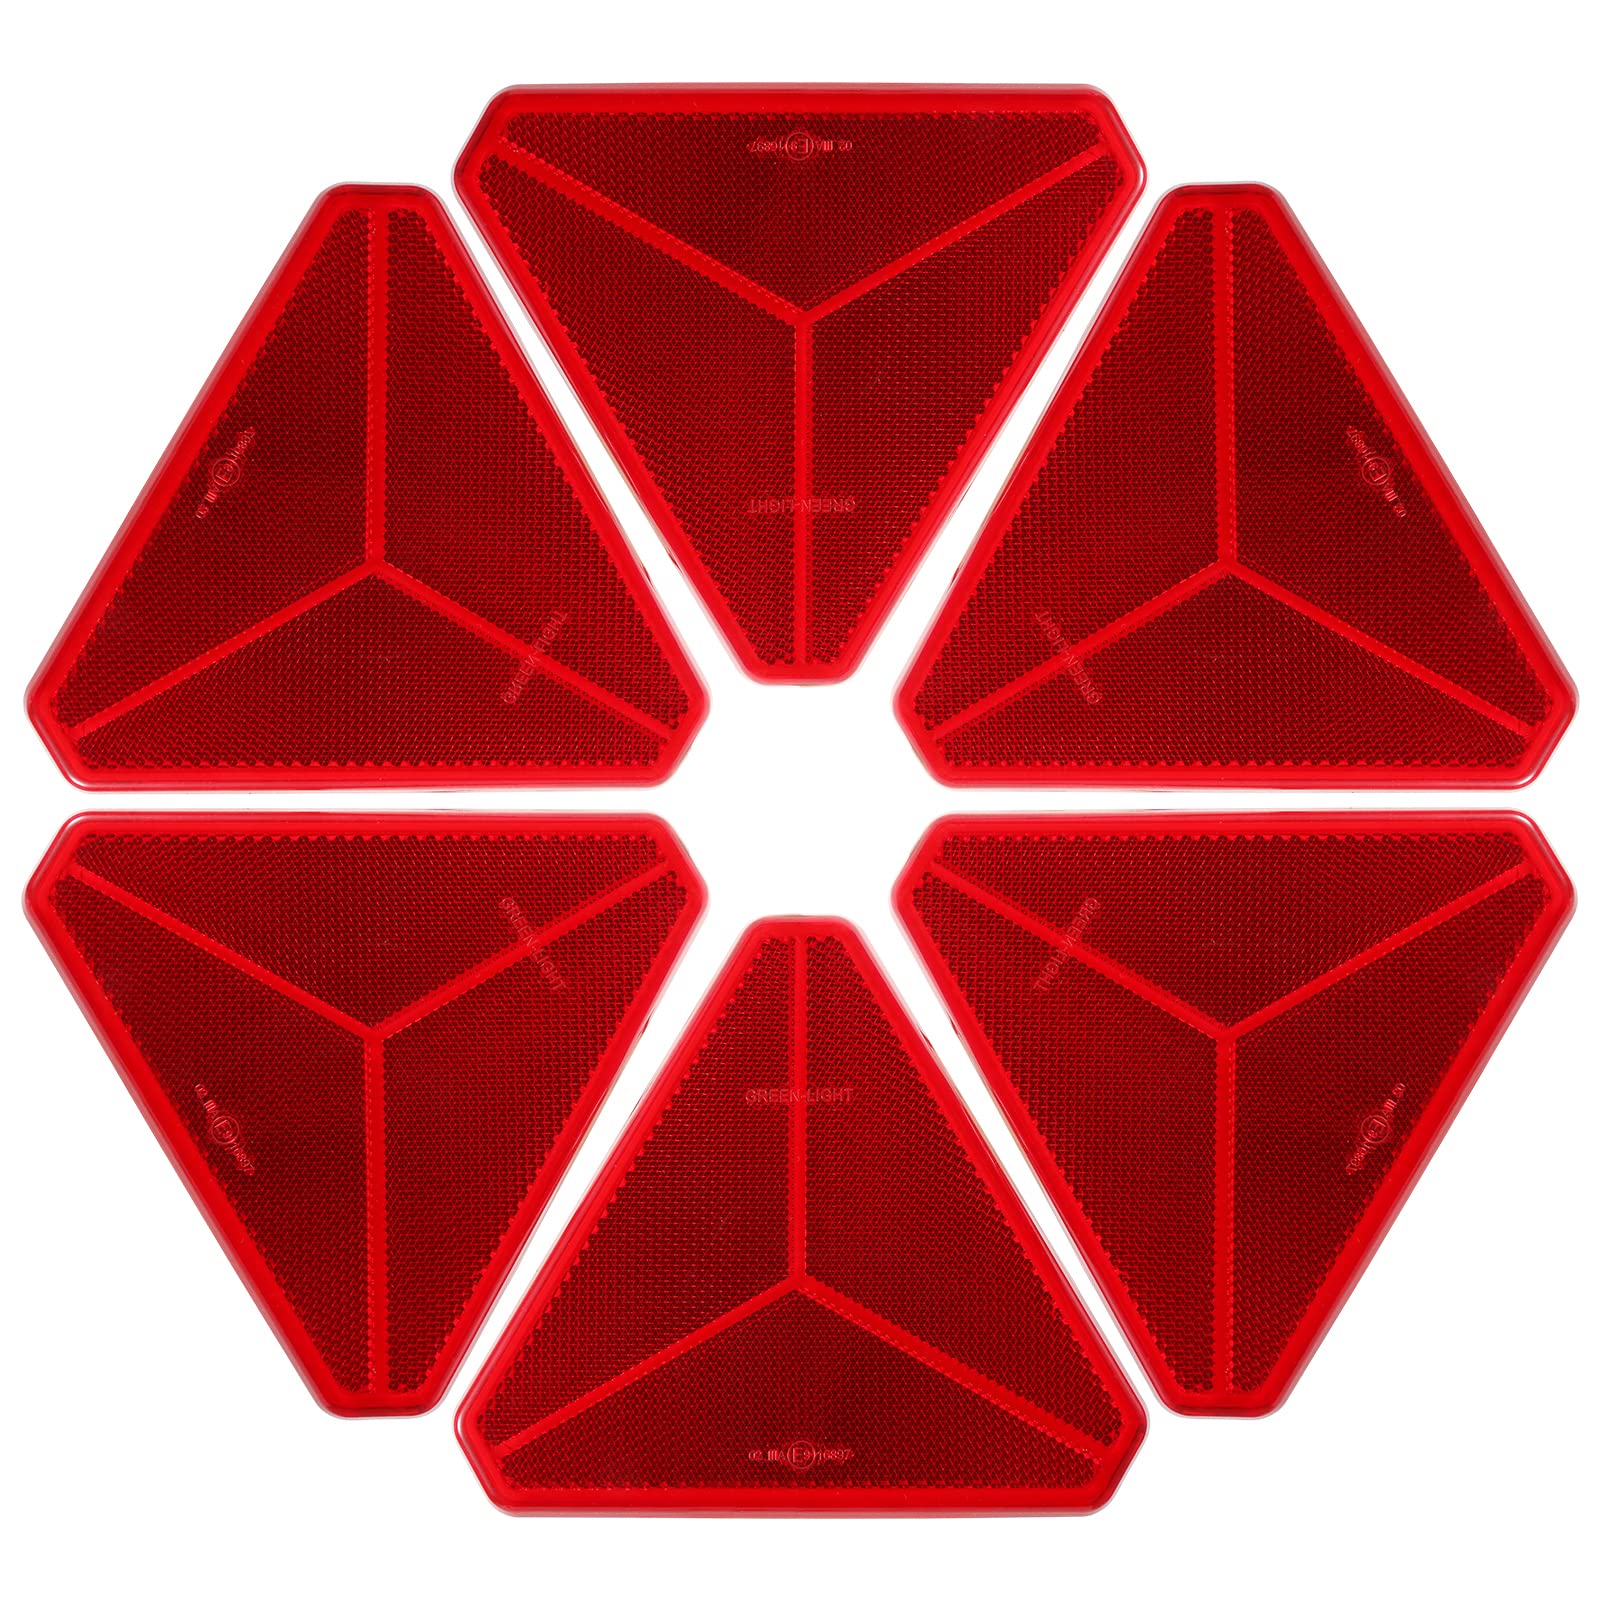 SPARKMOTO Dreieck Rückstrahler, 6 Stück reflektoren anhänger pkw selbstklebend,Nach ECE R3 Class IIIA Anhänger Reflektor Dreiecke,Reflektor für Anhänger rot,Reflektoren rückstrahler anhänger(6 Stück) von SPARKMOTO